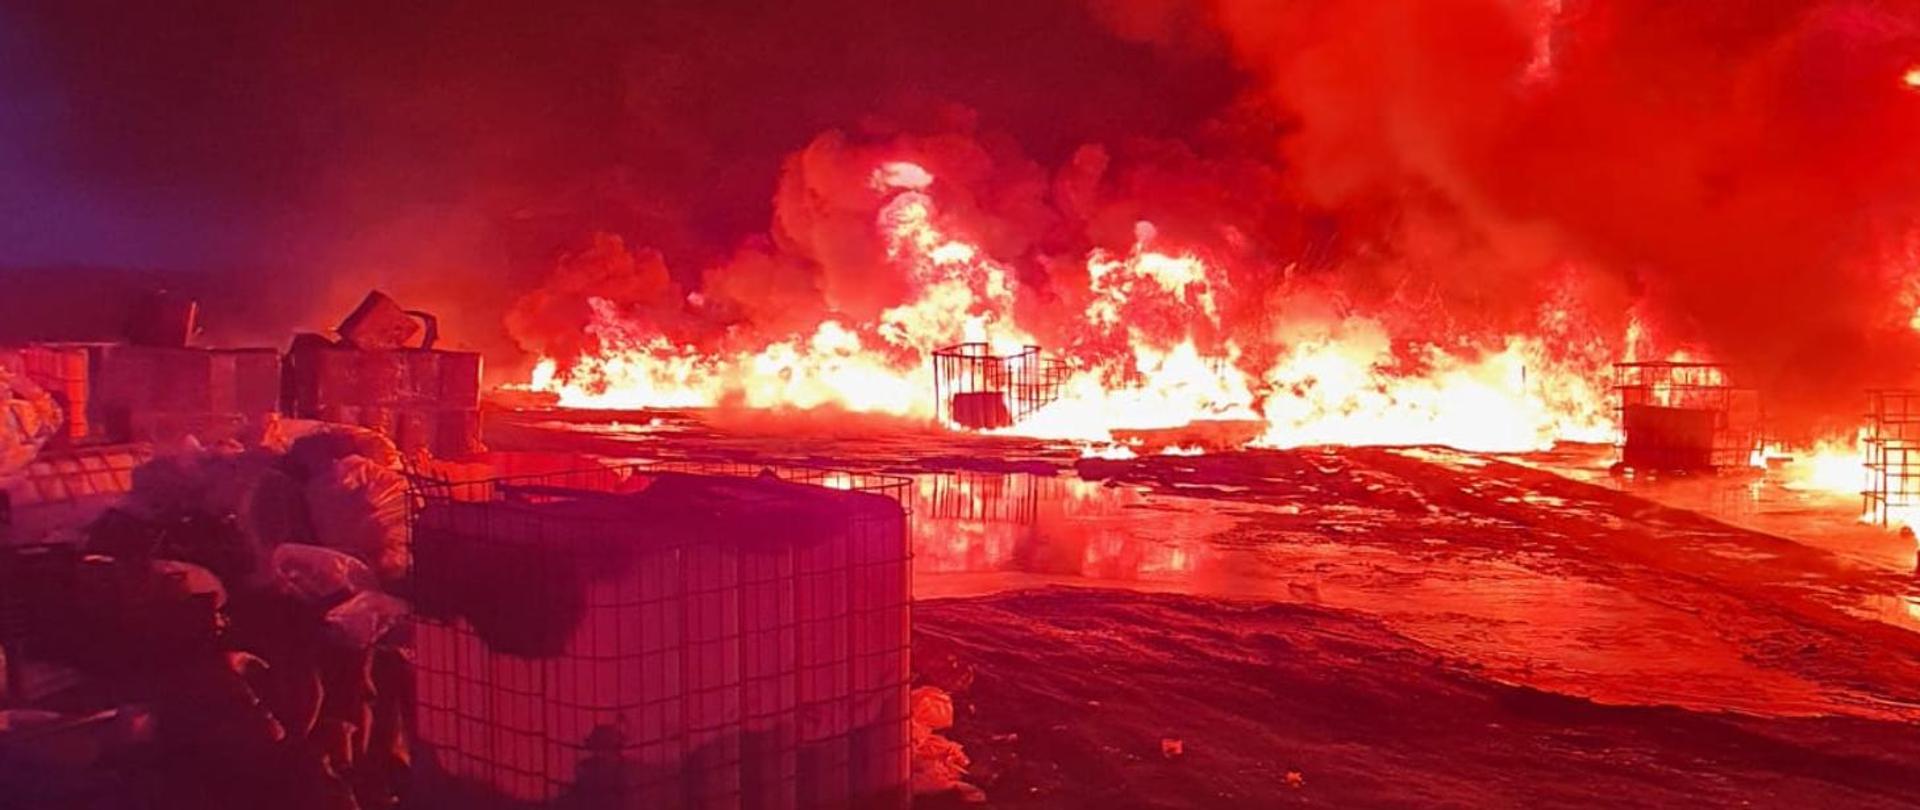 Pożar zakładu produkcyjnego w miejscowości Bystrzyca - zdjęcie przedstawia palące elementy zakładu produkcyjnego